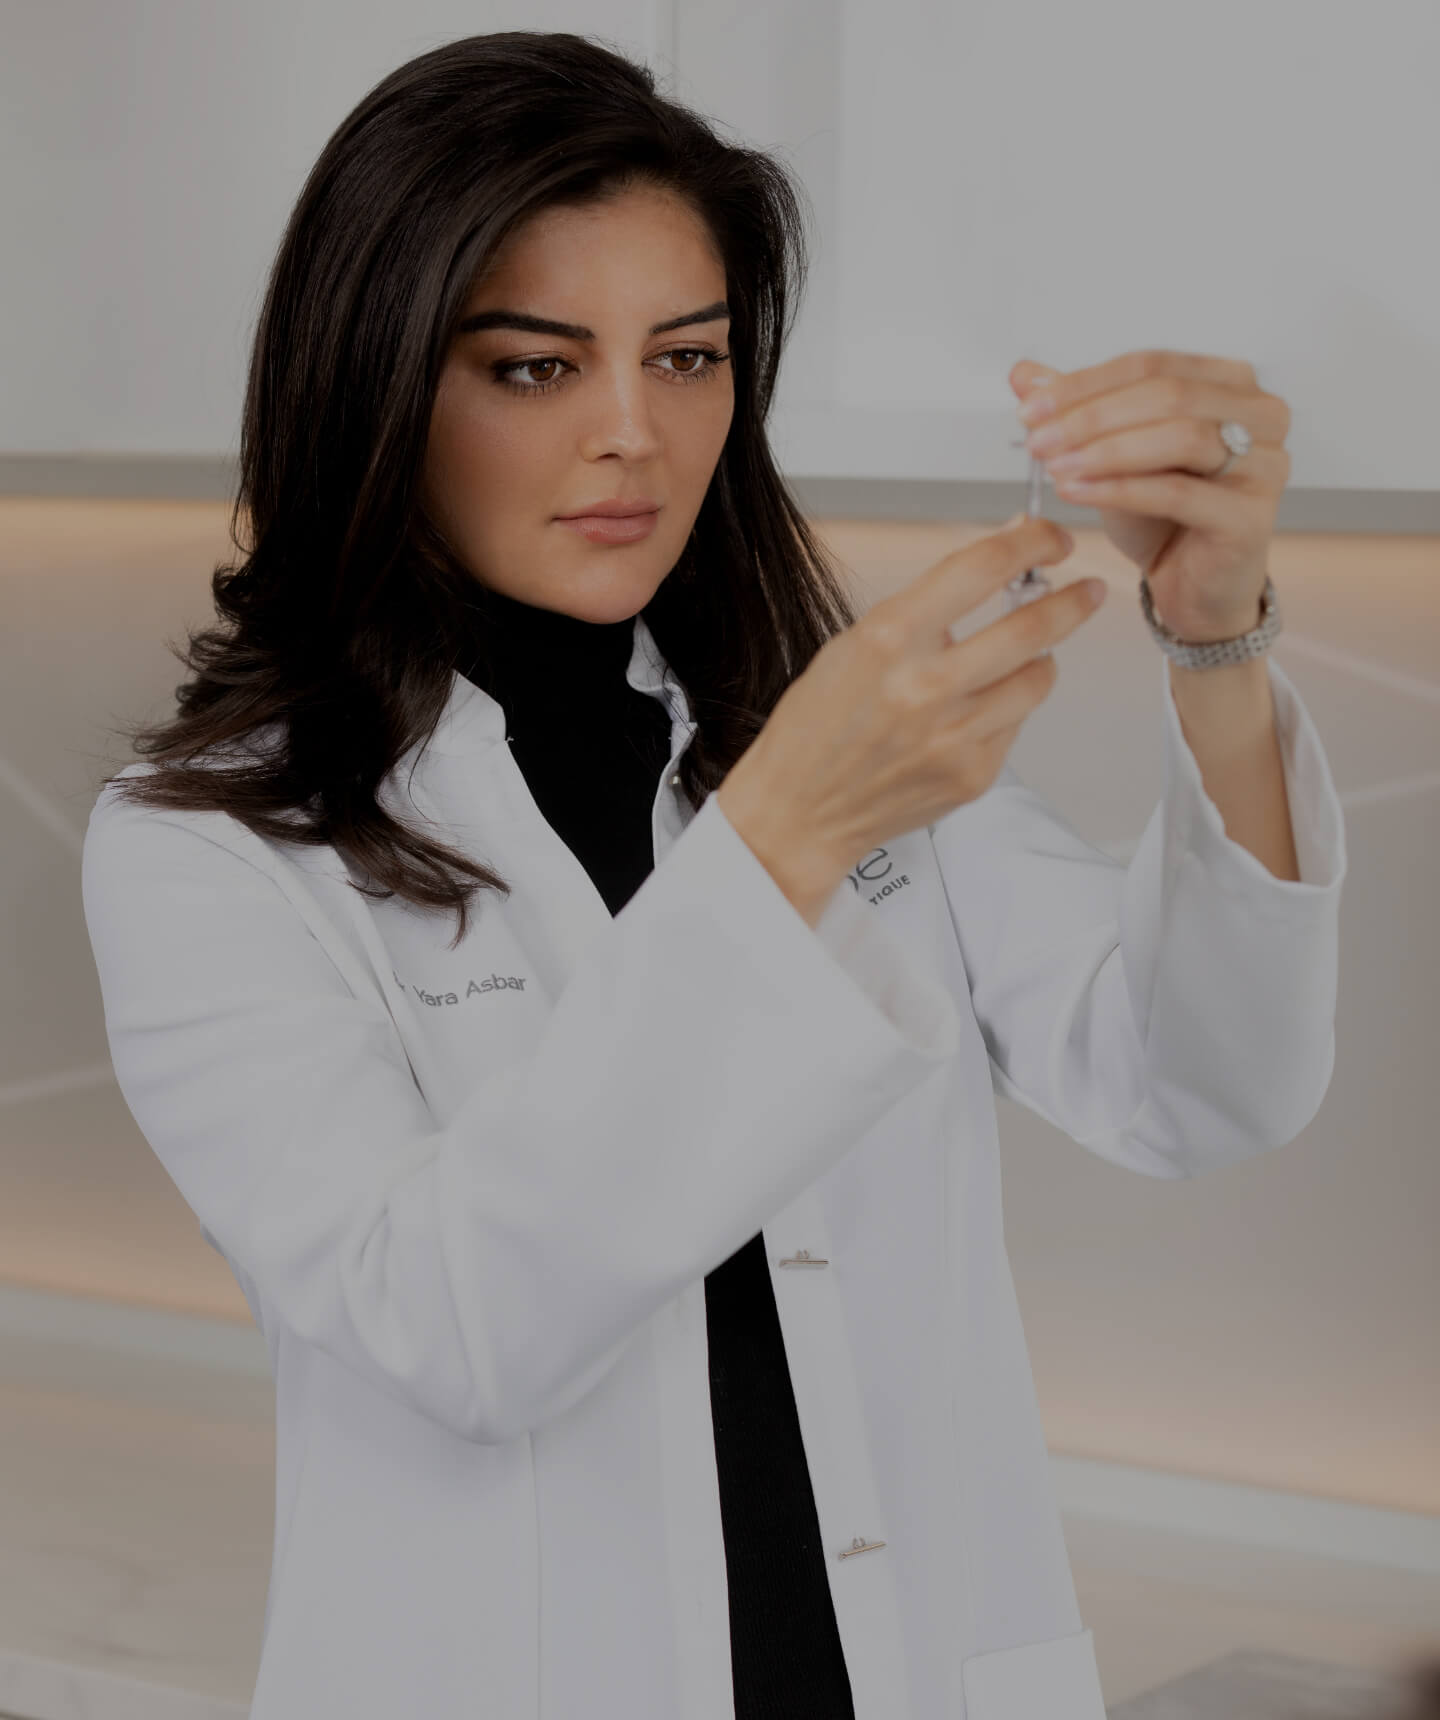 Dre Yara Asbar préparant une seringue d'agents neuromodulateurs avant de recevoir son prochain patient